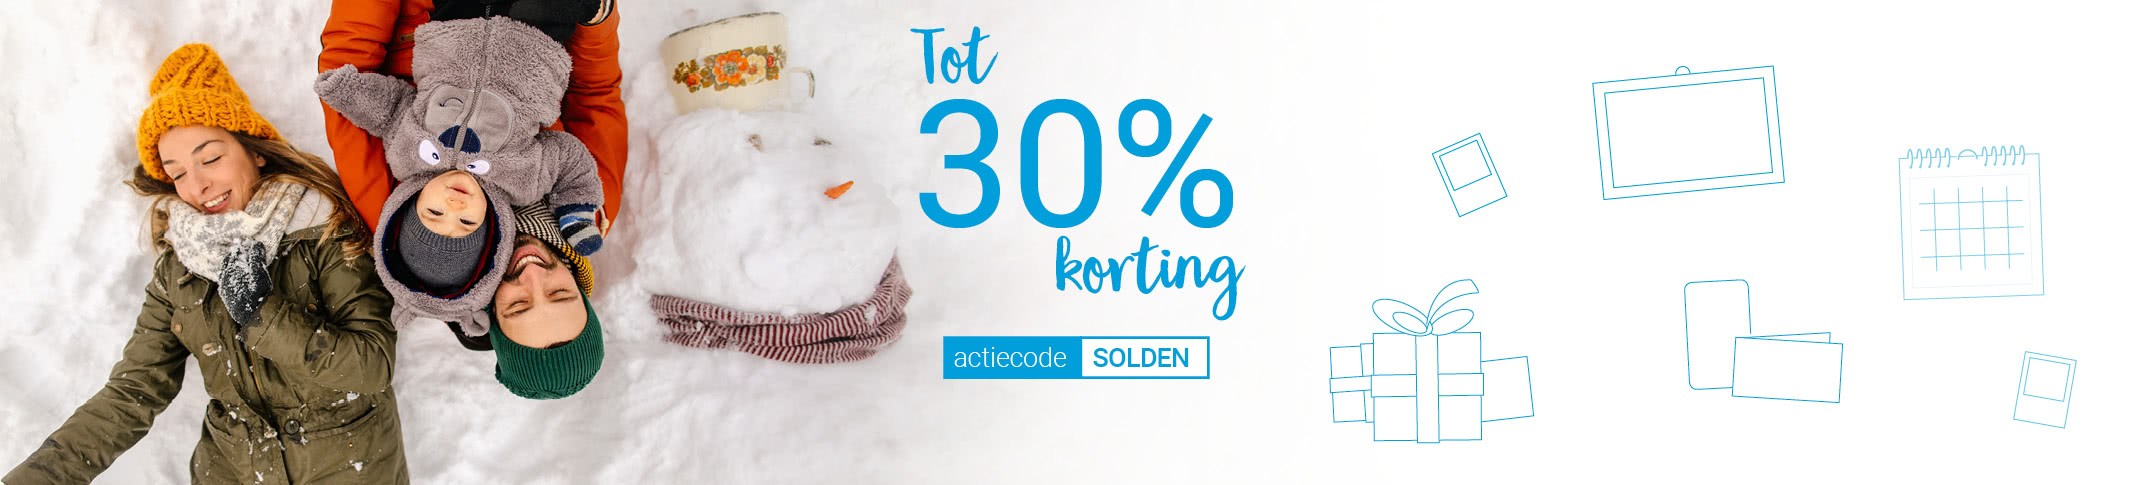 Actie van de maand Januari Smartphoto Solden - tot 30% korting